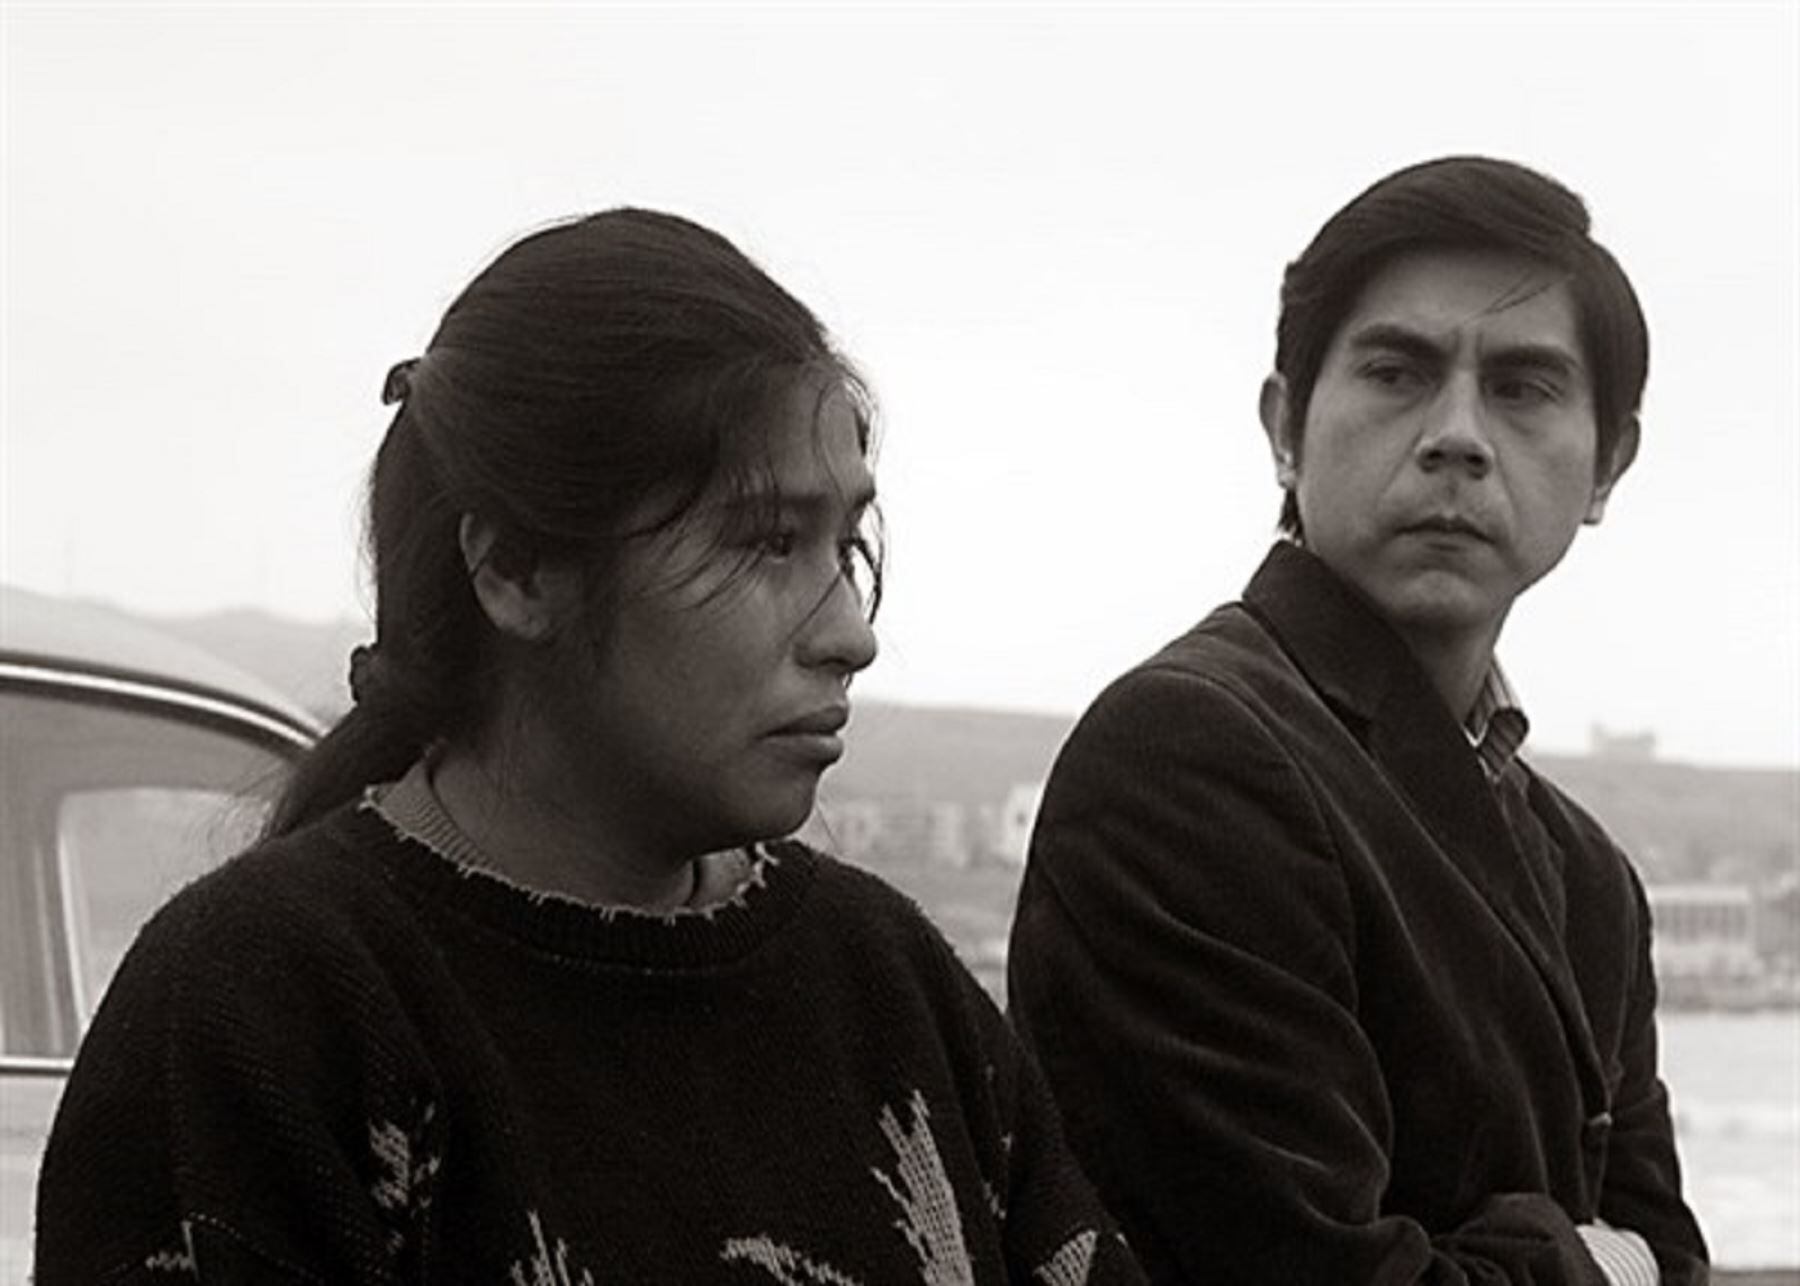 La película "Canción sin nombre" fue dirigido por la cineasta peruana Melina León.